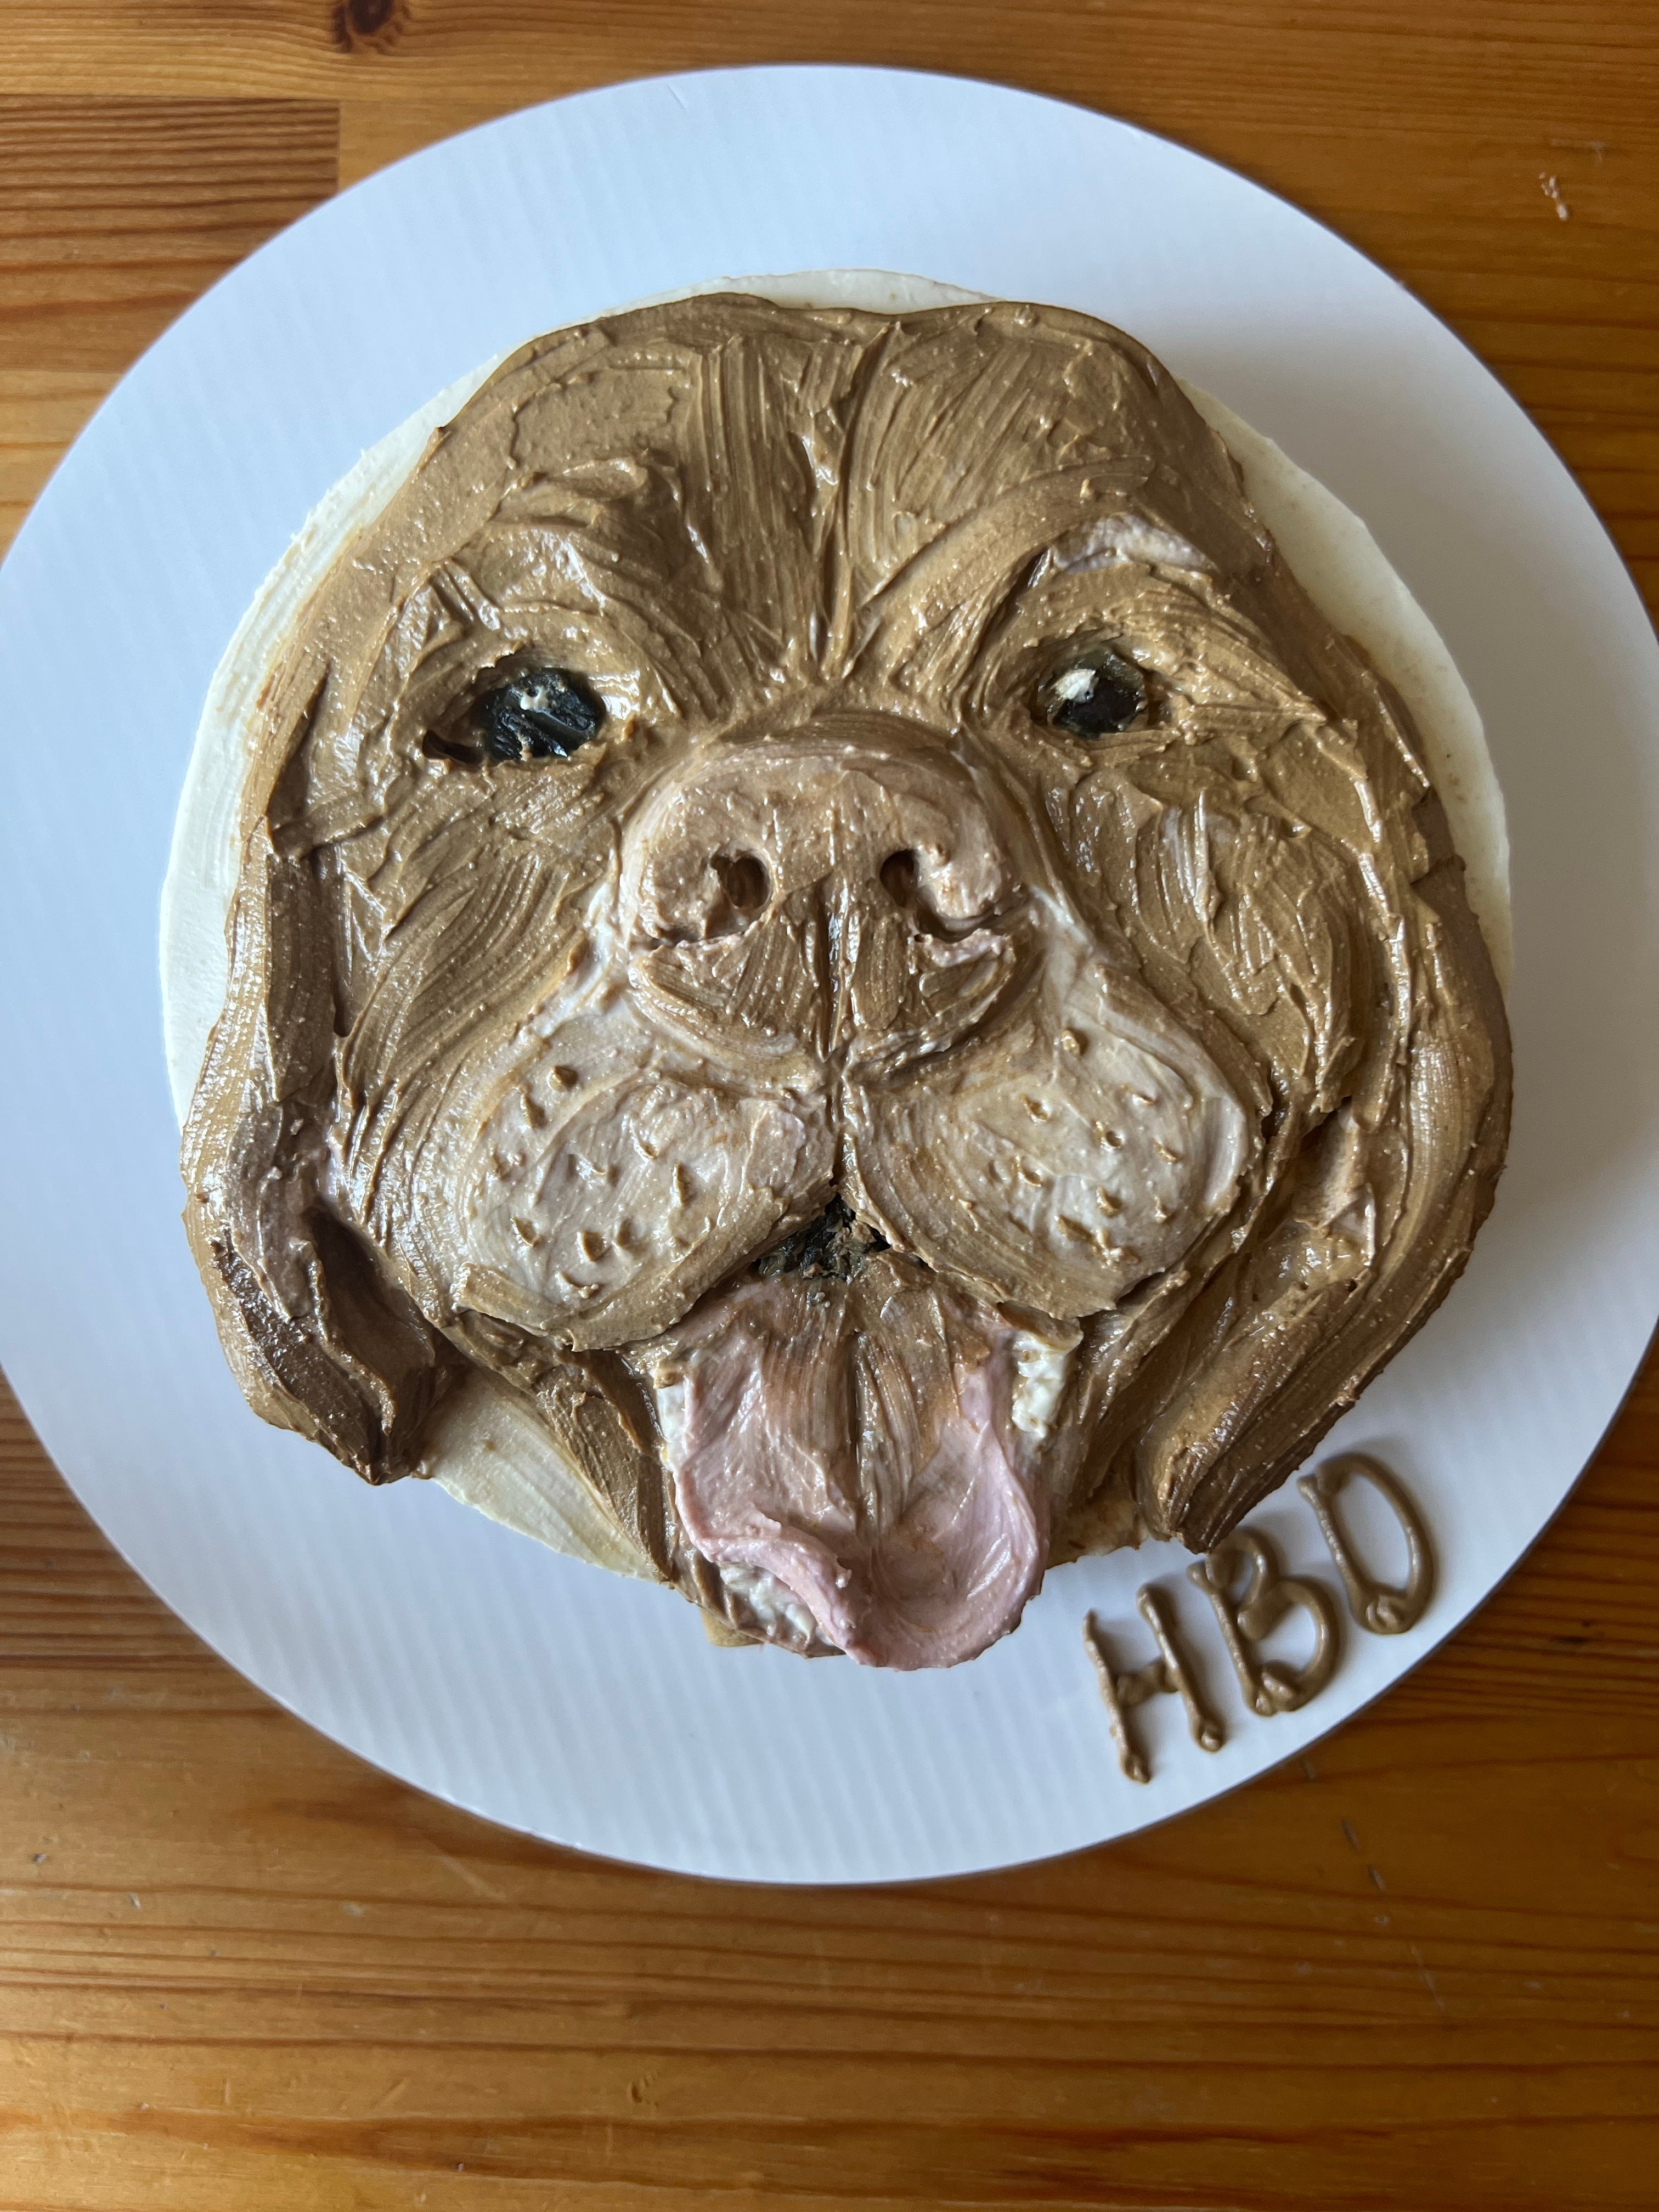 Doggy Dog cake